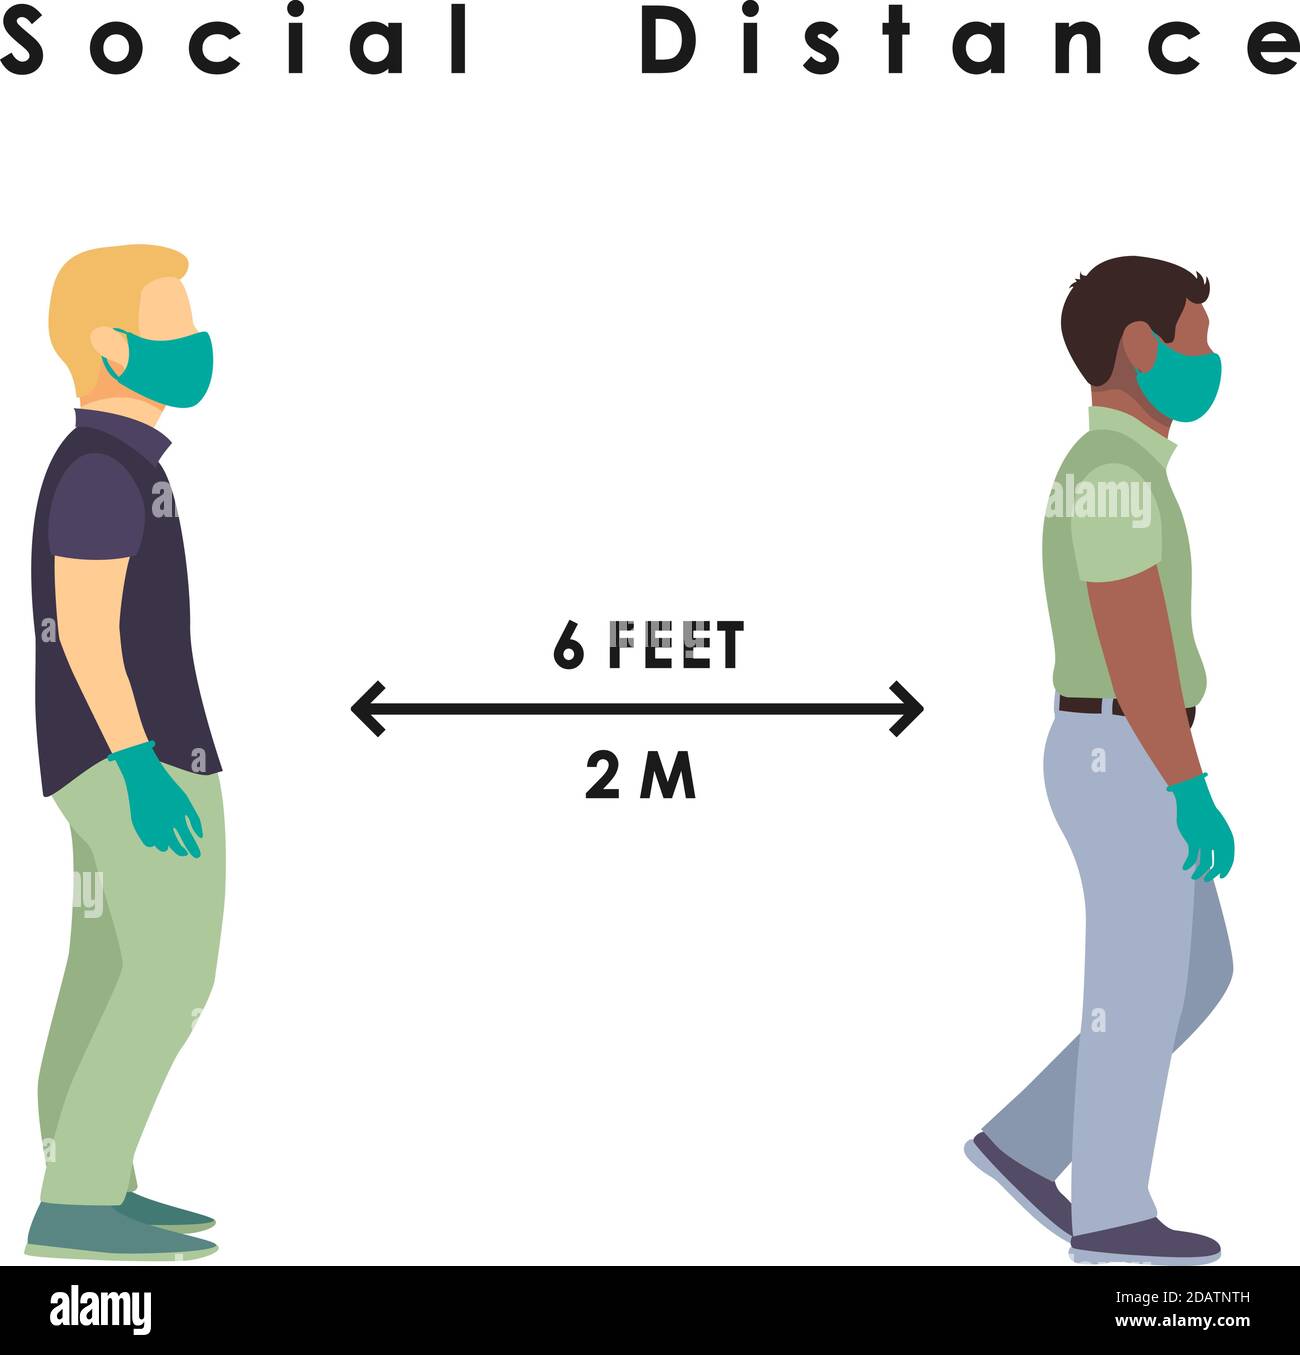 Zwei Männer unterschiedlicher Nationalität in Masken und Handschuhen stehen in einem sicheren Abstand von 2 Metern oder 6 Fuß. Flacher Vektor Stock Vektor